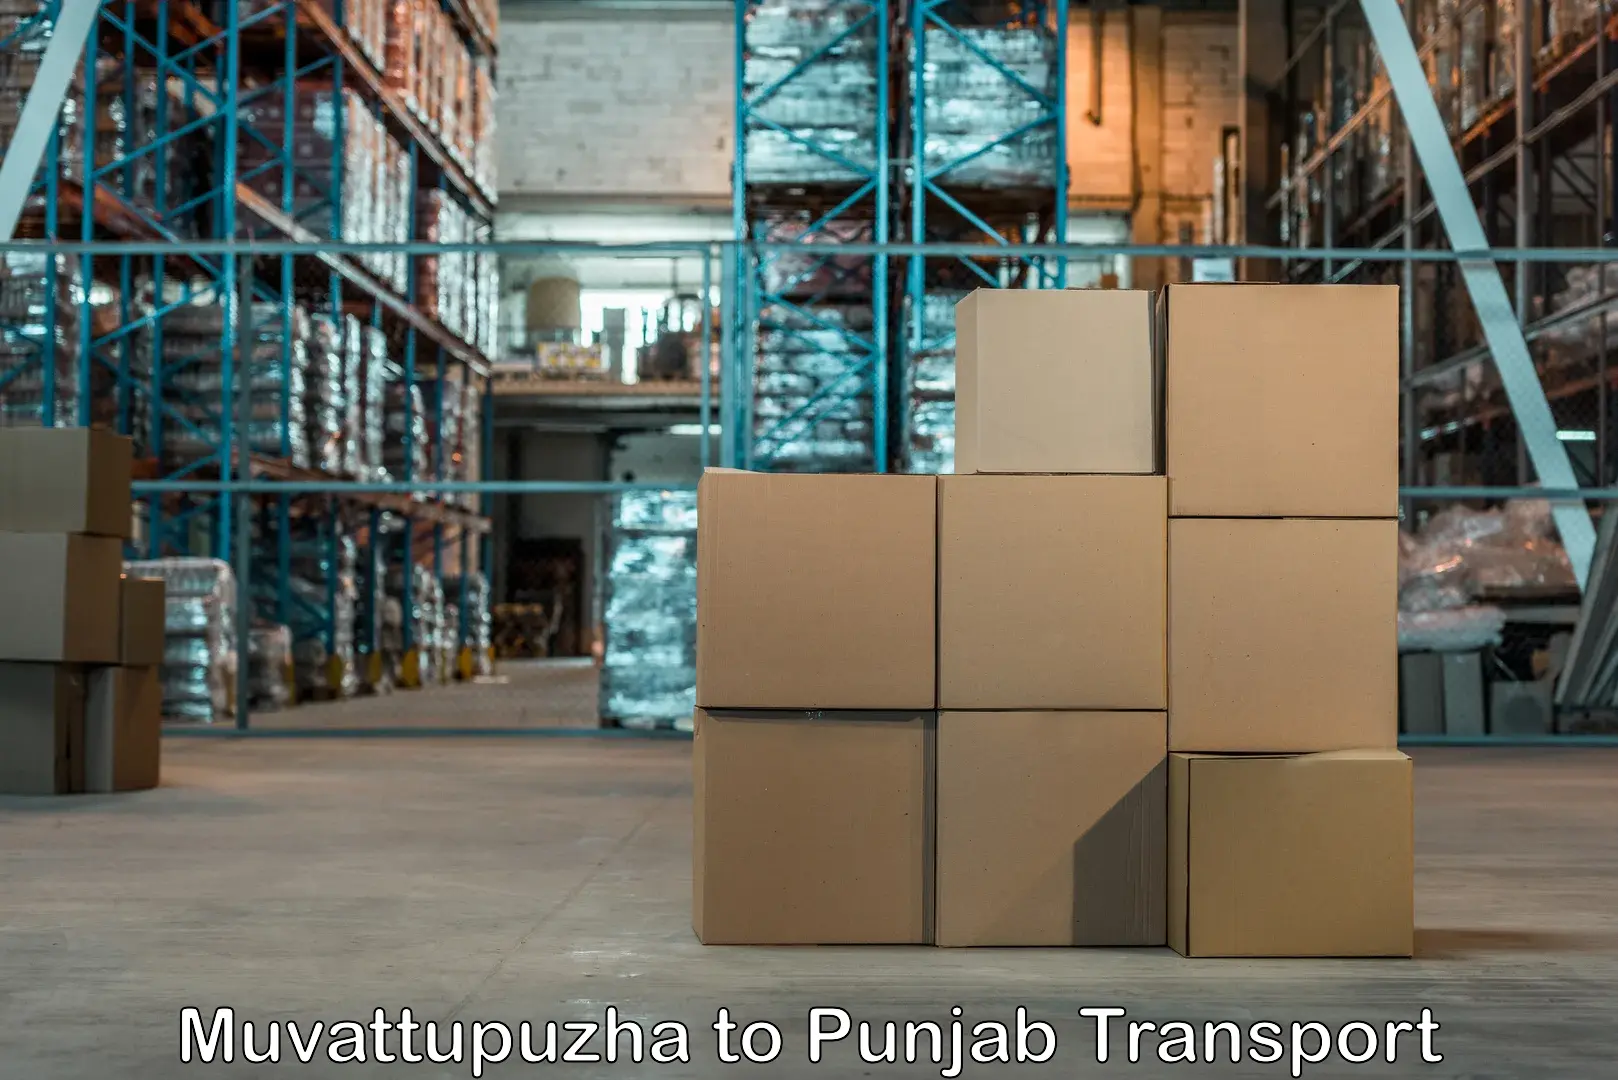 Container transport service Muvattupuzha to Malerkotla